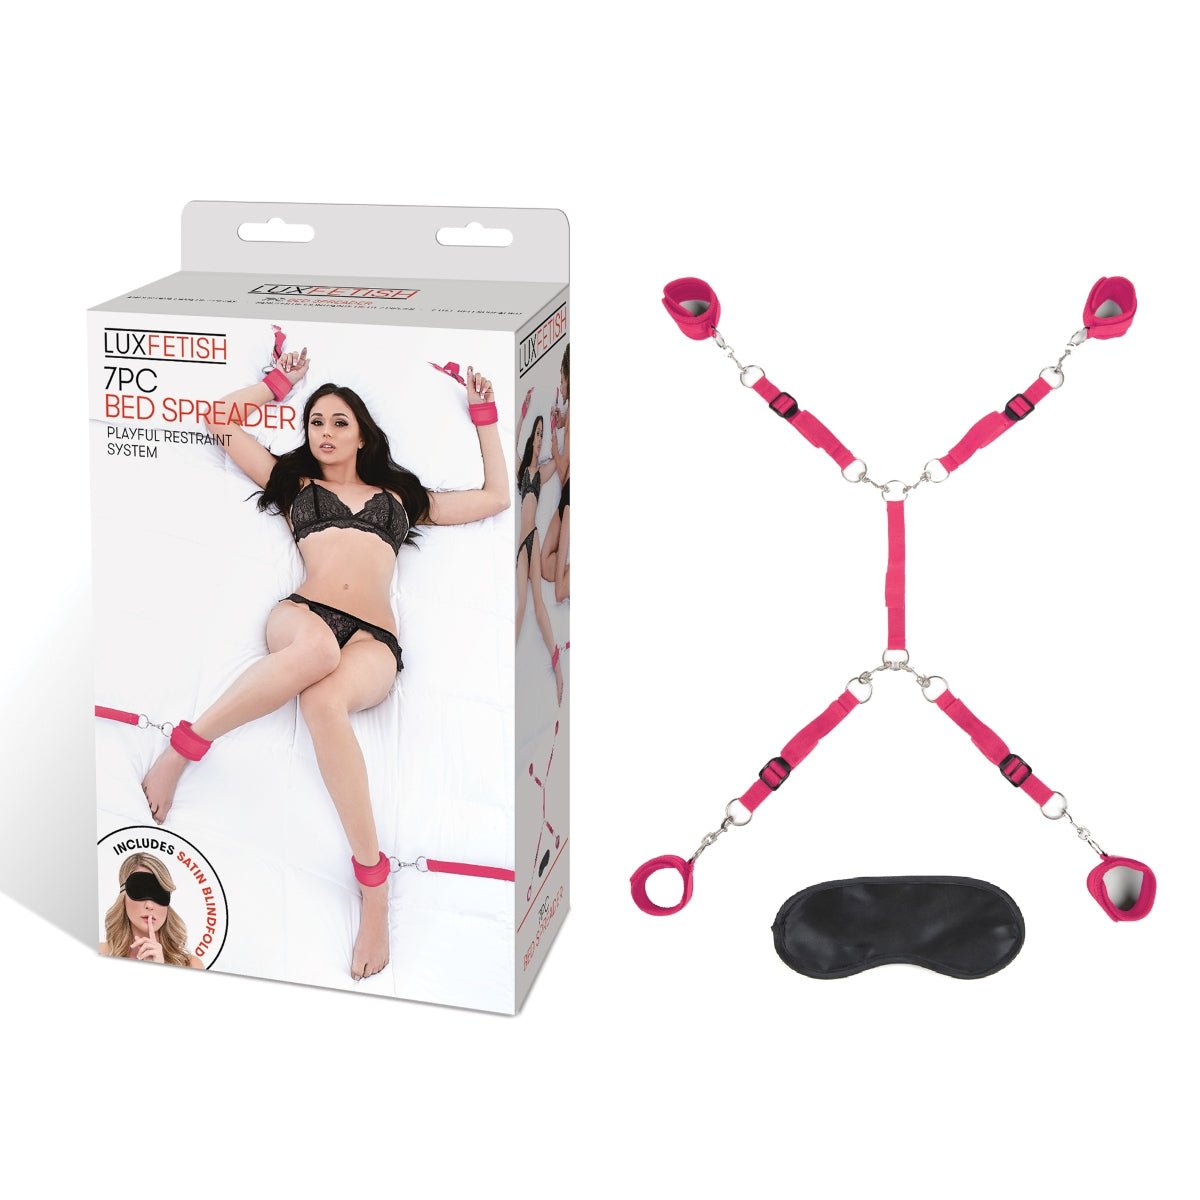 Bondage Kits Lux Fetish 7 Piece Bed Spreader Playful Restraint System   